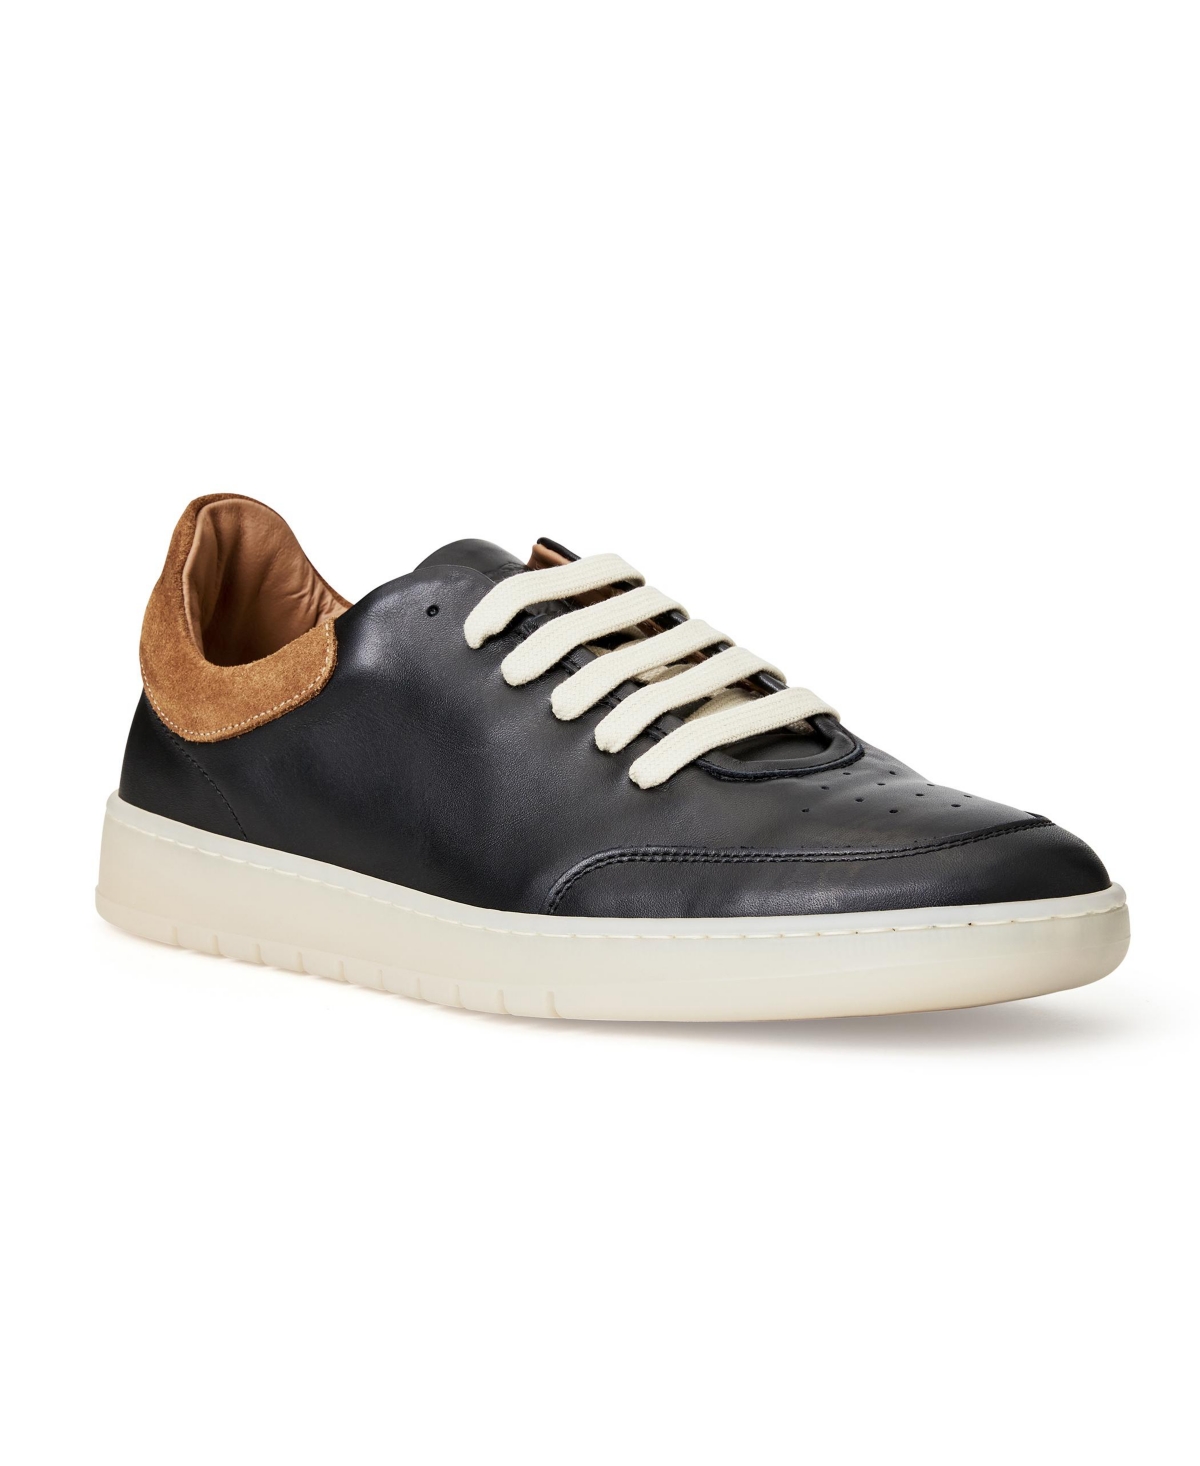 Bruno Magli Men's Leather Savio Sneakers Men's Shoes